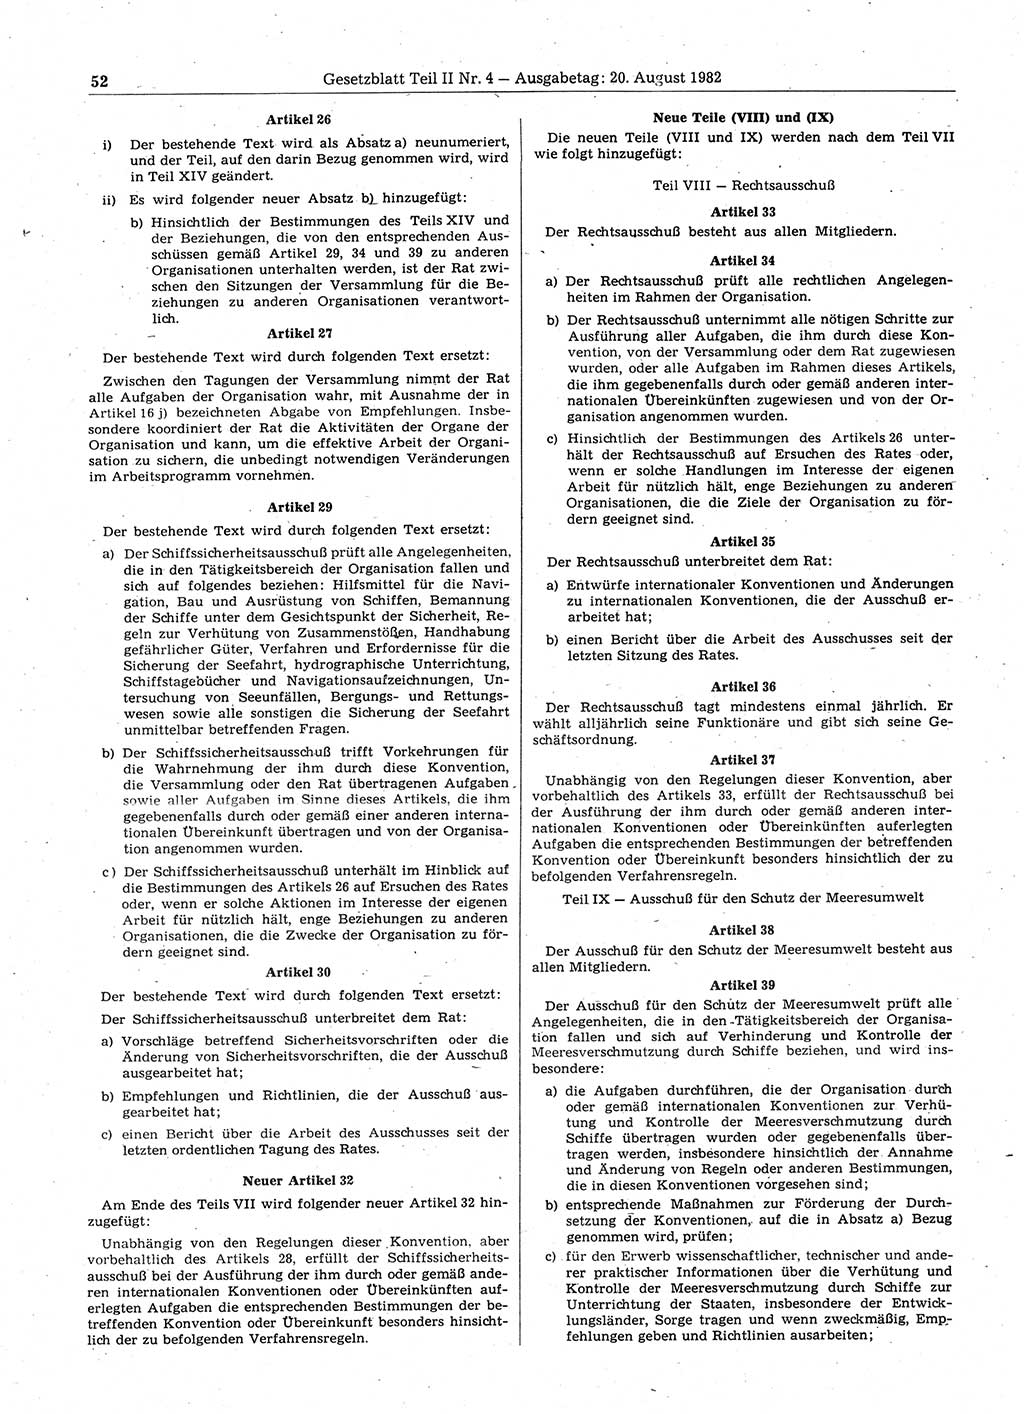 Gesetzblatt (GBl.) der Deutschen Demokratischen Republik (DDR) Teil ⅠⅠ 1982, Seite 52 (GBl. DDR ⅠⅠ 1982, S. 52)